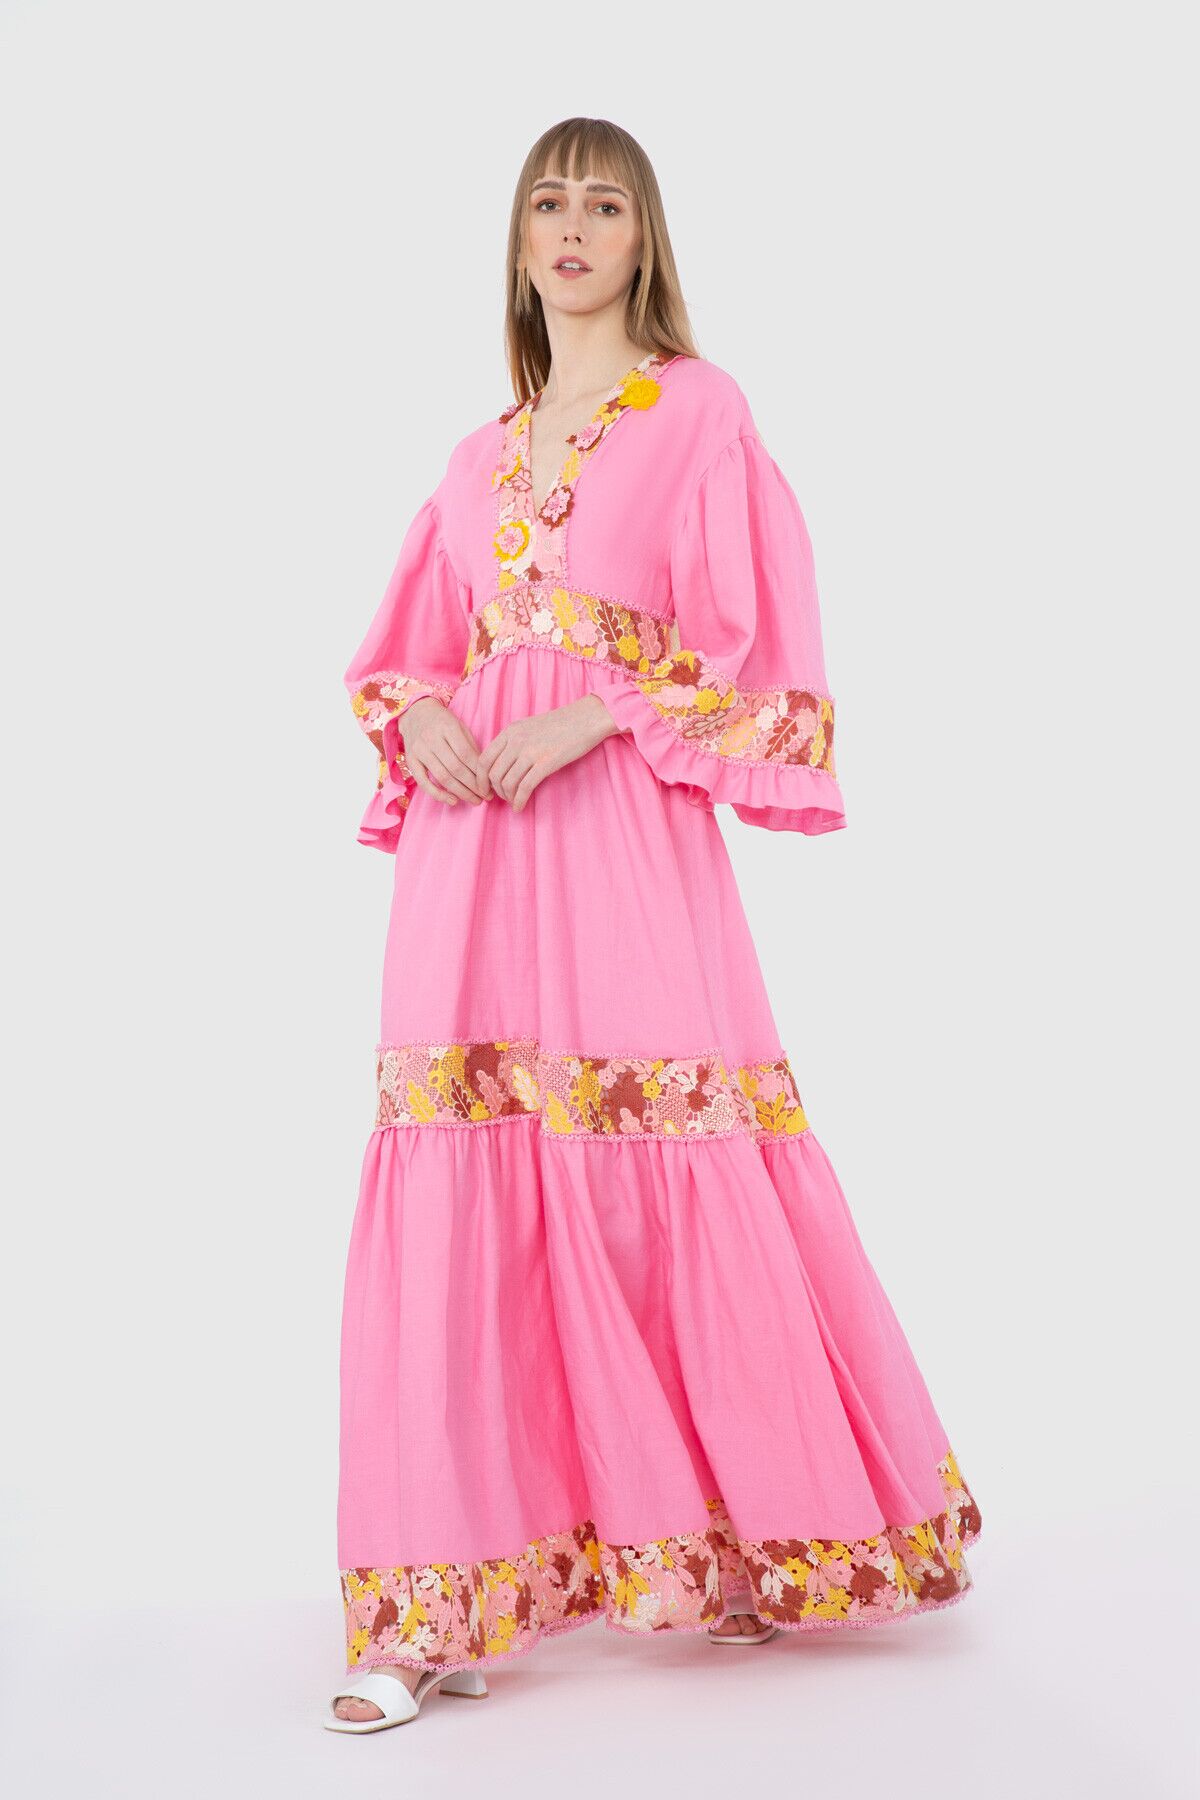 GIZIA - V-Neck Floral Patterned Pink Long Dress